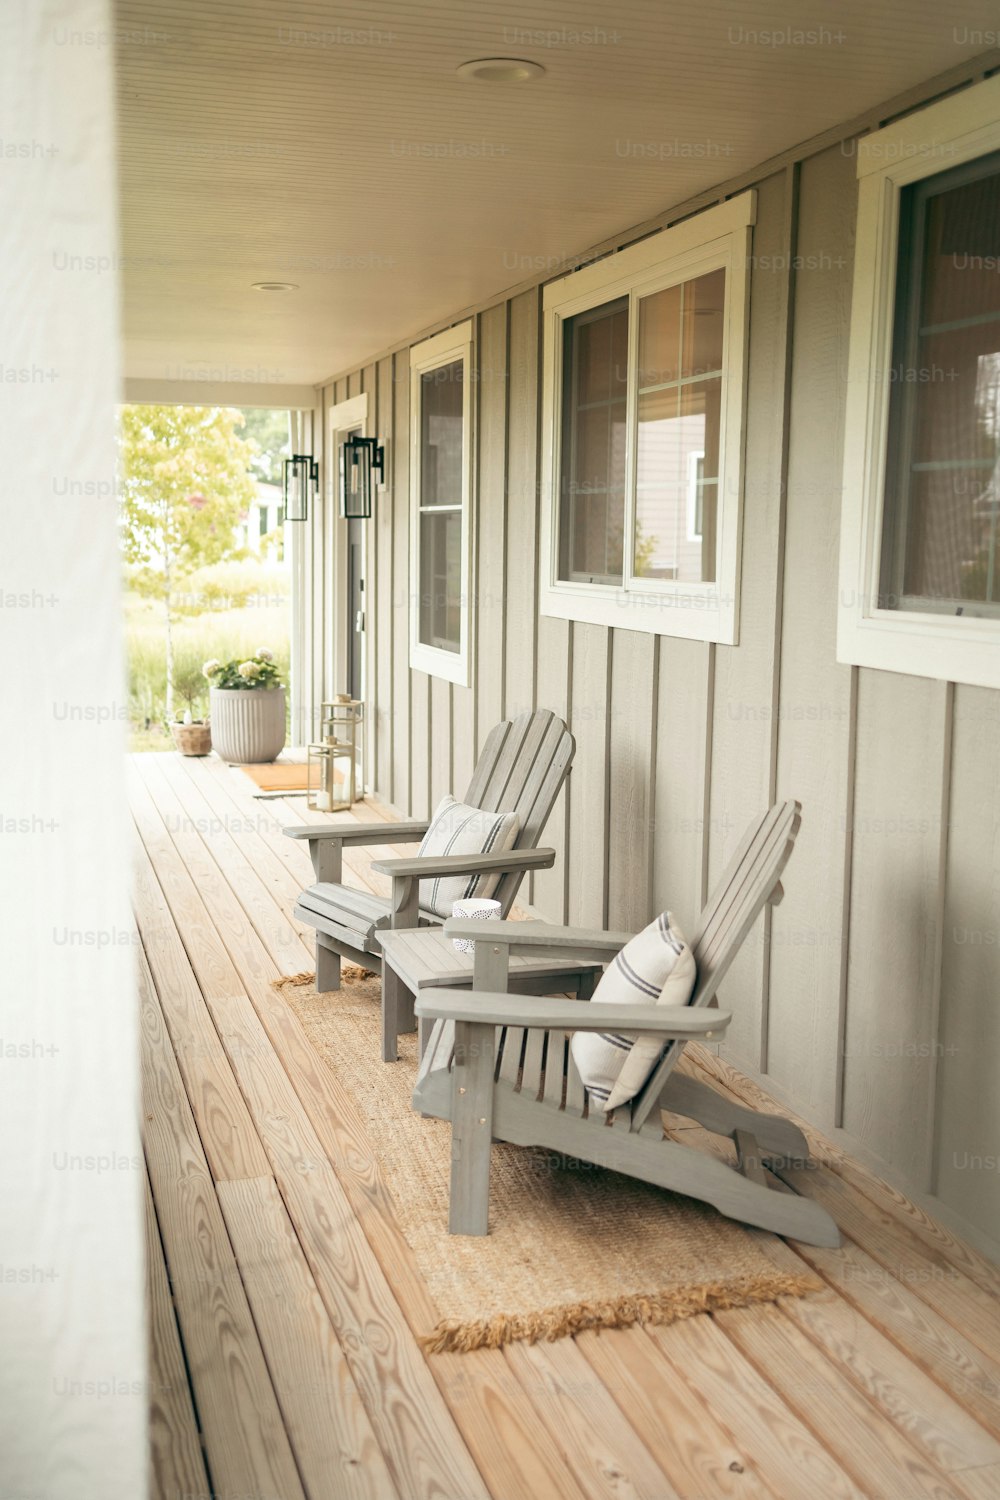 Un par de sillas de jardín sentadas encima de una terraza de madera